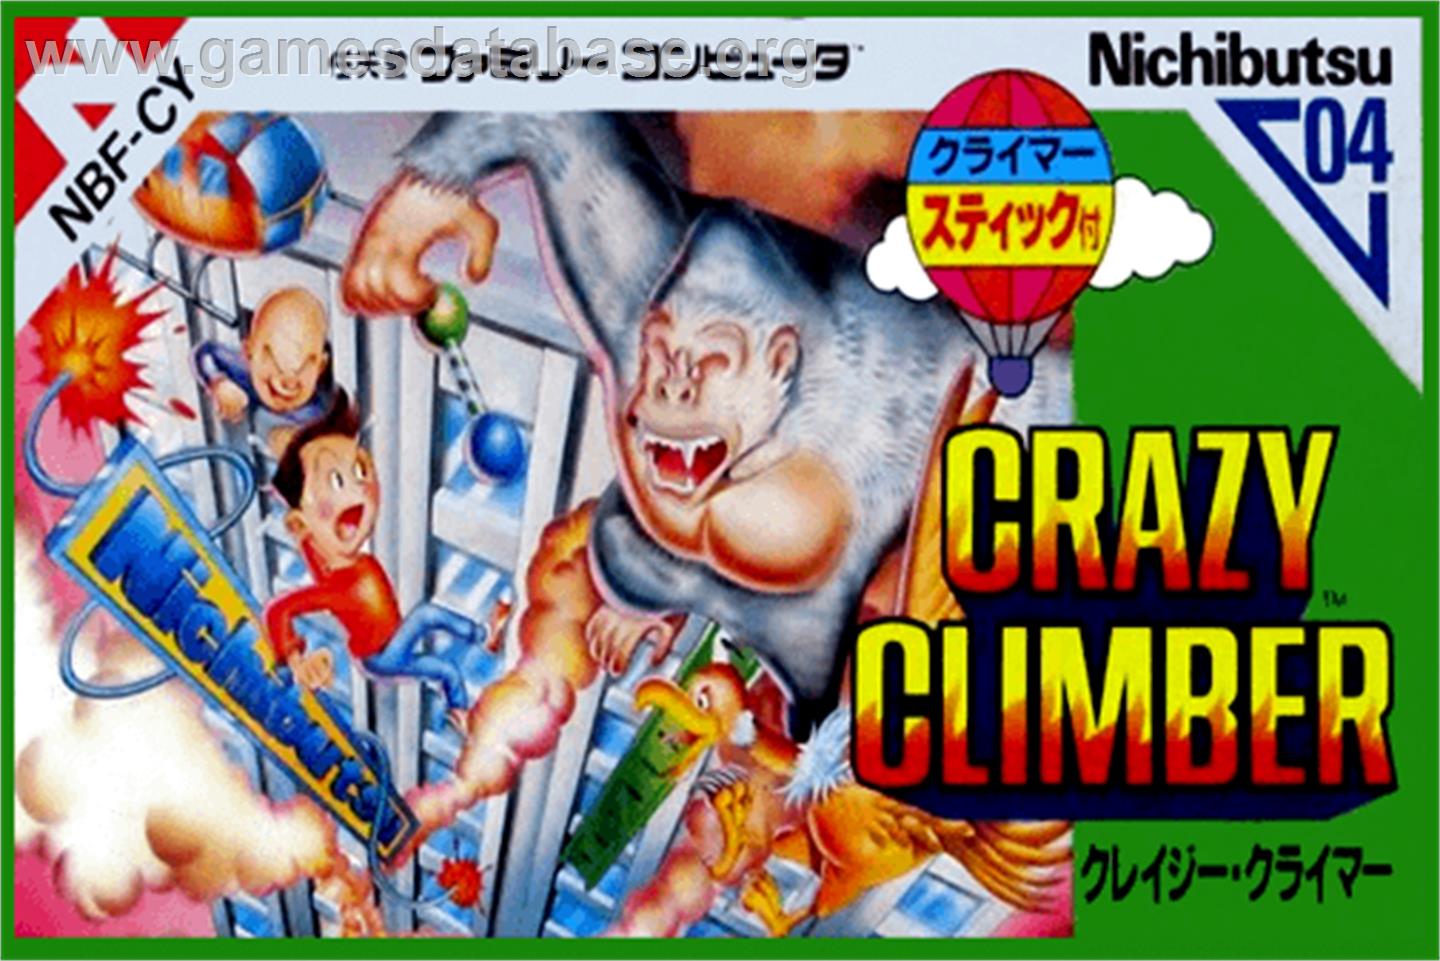 Crazy Climber - Nintendo NES - Artwork - Box